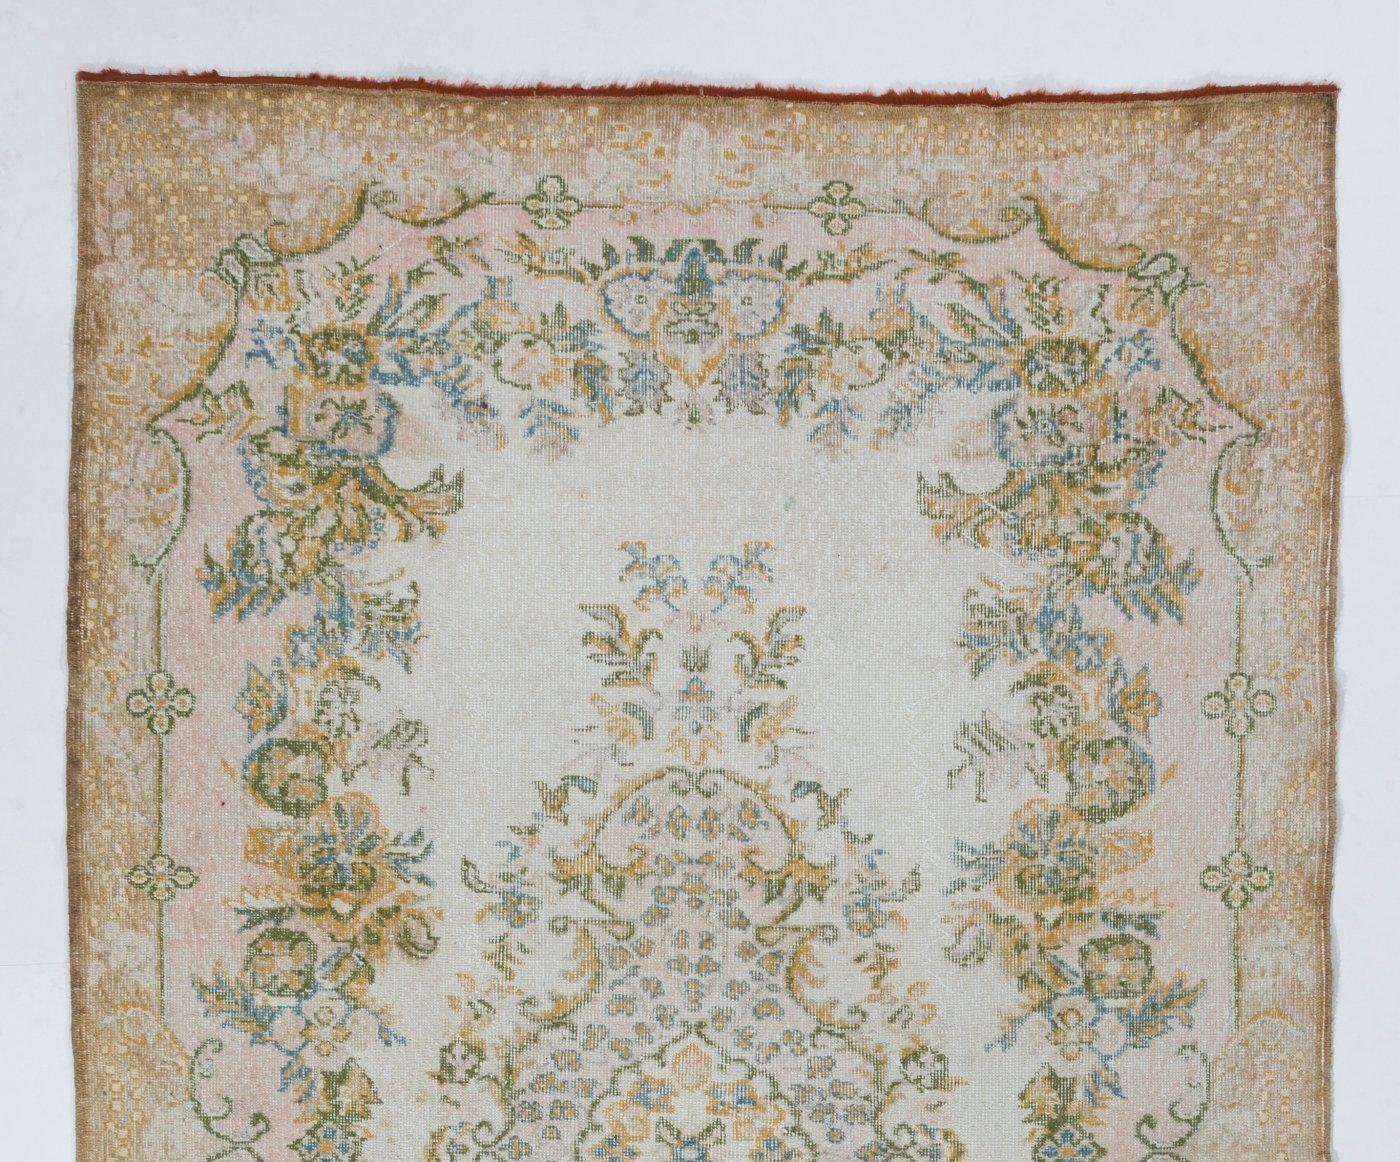 Tapis turc vintage des années 1950, finement noué à la main, présentant un motif floral en médaillon. Le tapis a même des poils bas en laine sur une base en coton. Il est lourd et repose à plat sur le sol, en très bon état et sans problème. Il a été